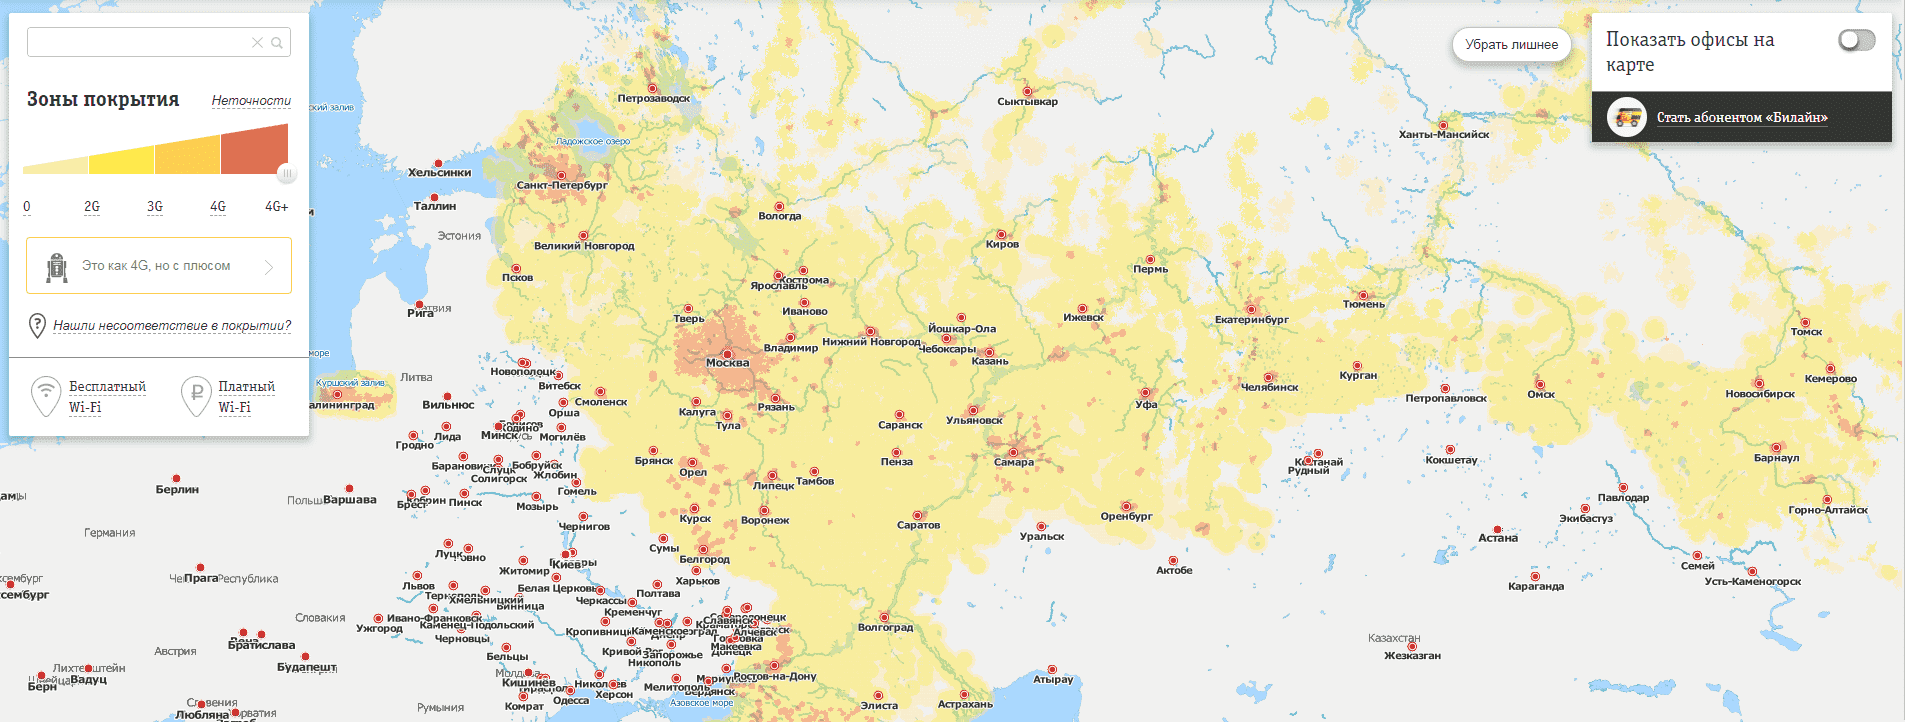 Зона покрытия yota: карта расположения базовых станций